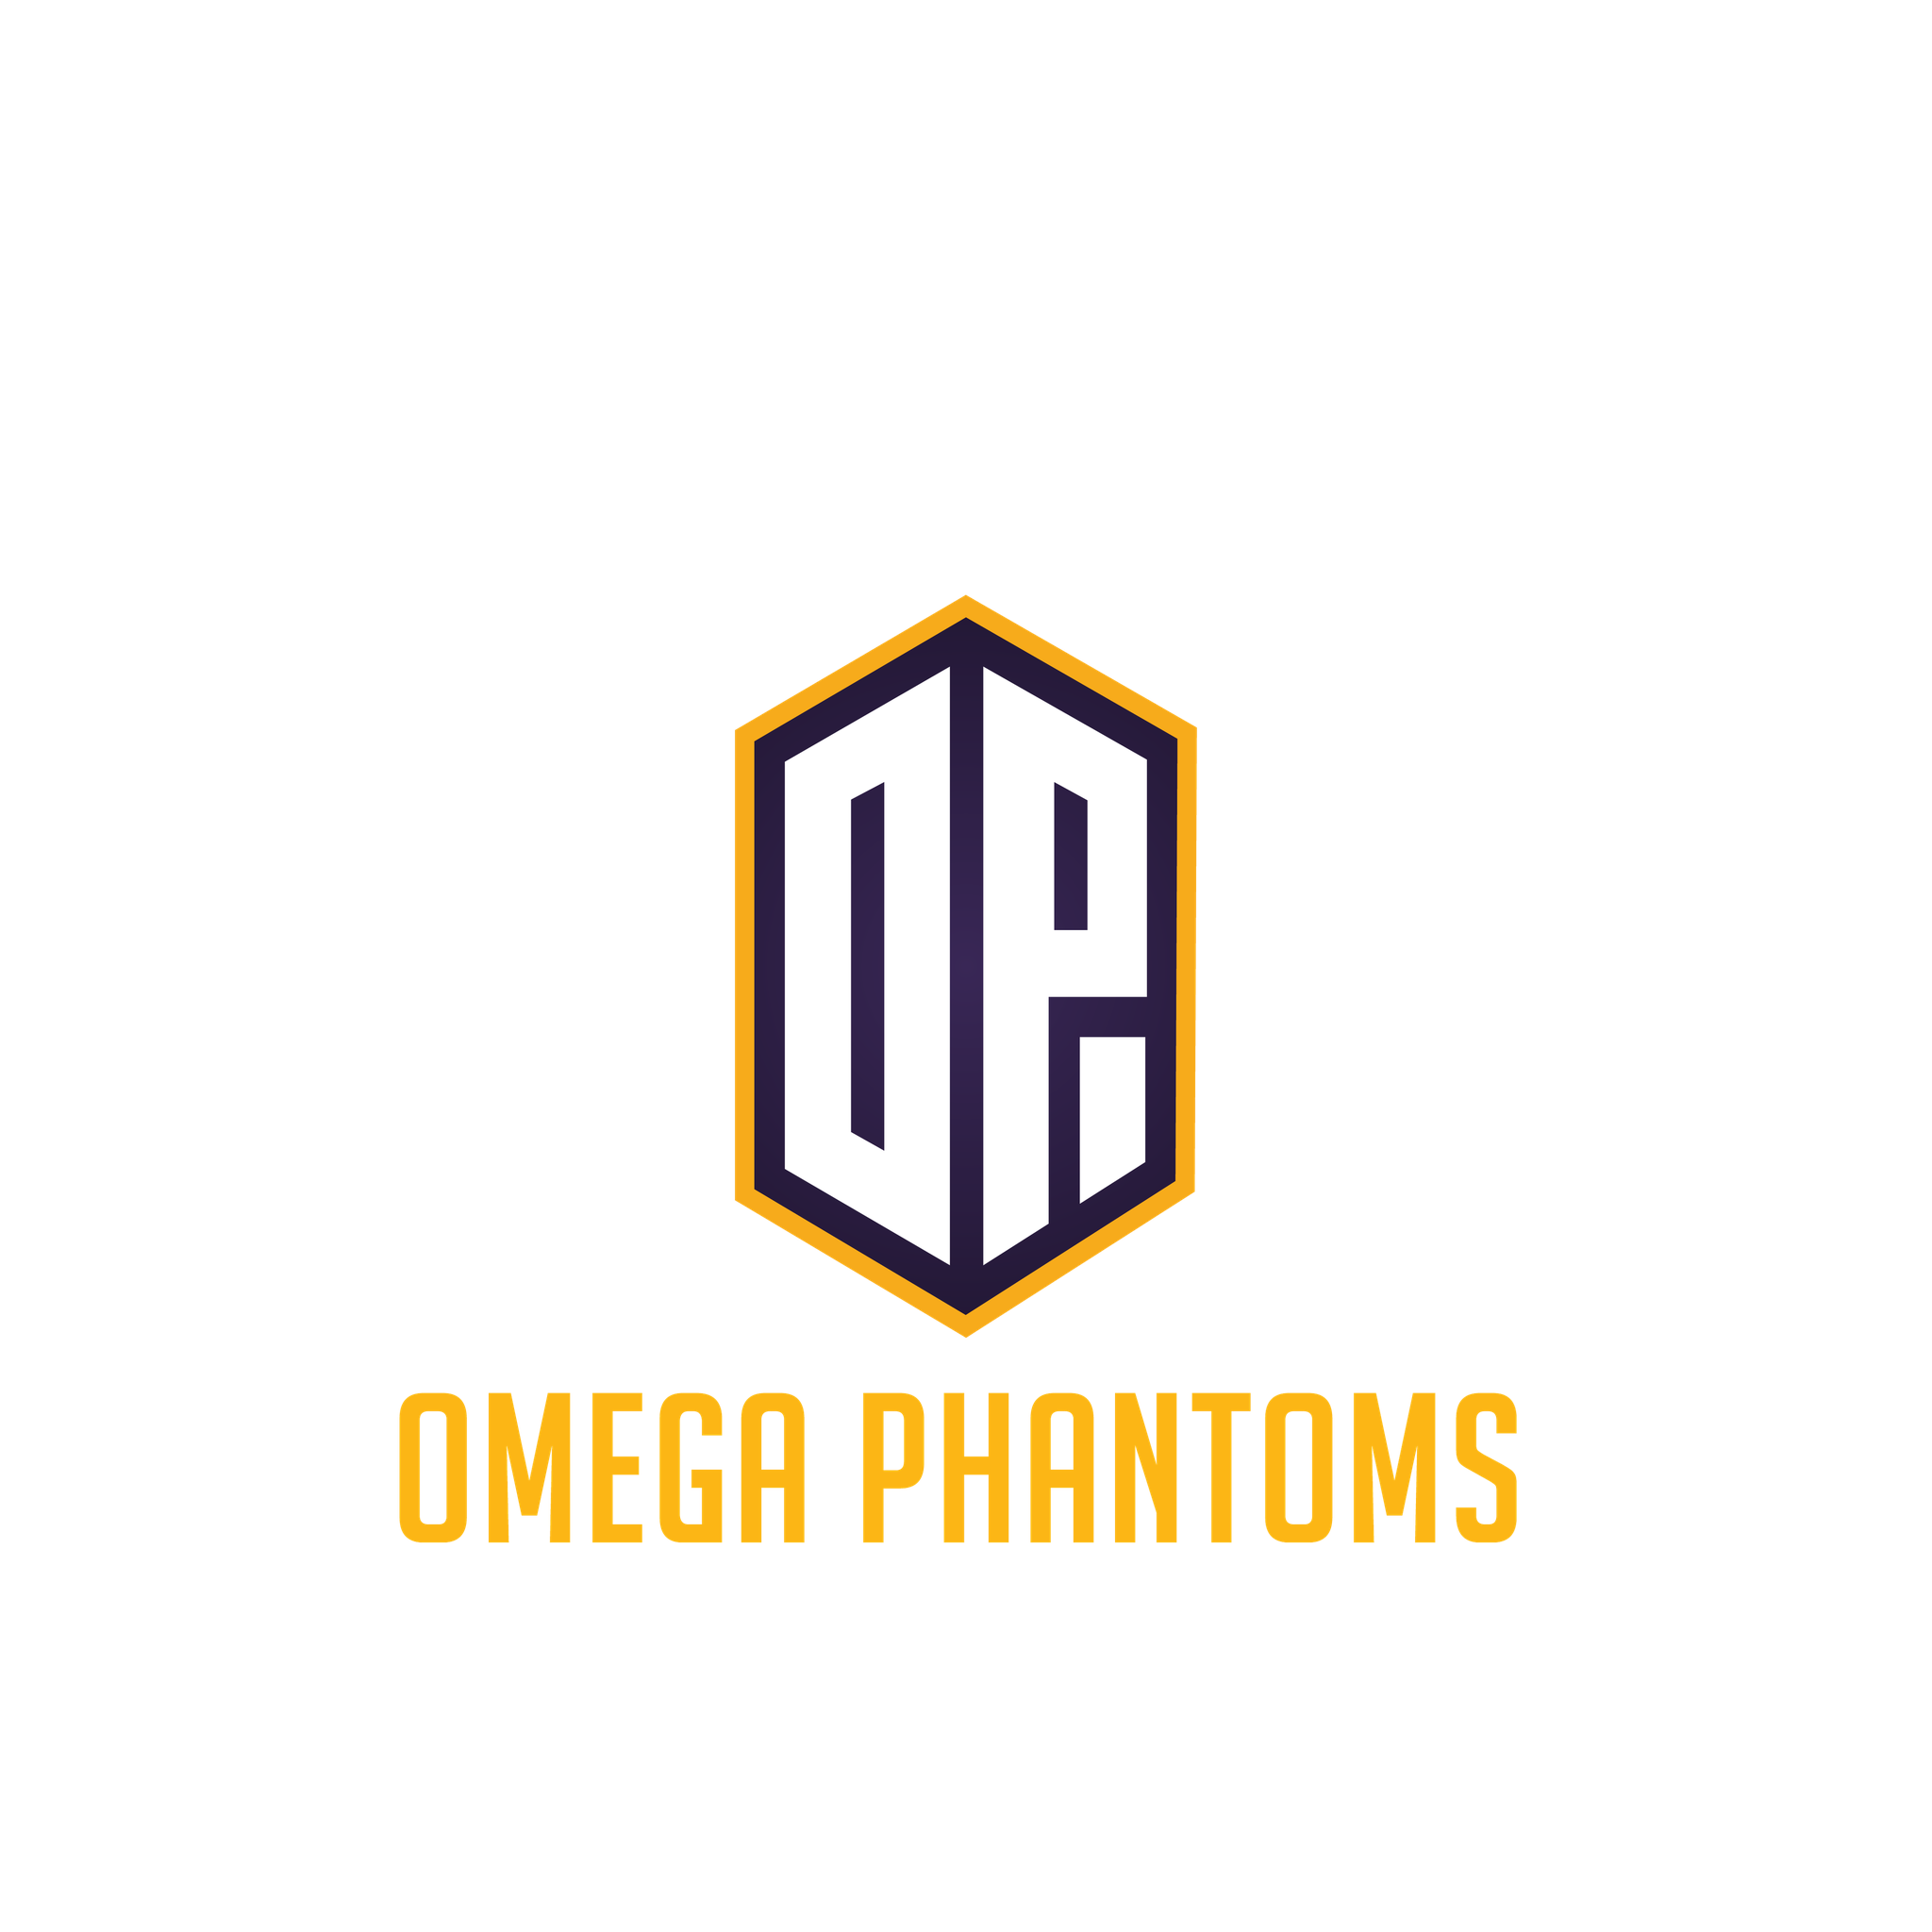 Omega Phantom's